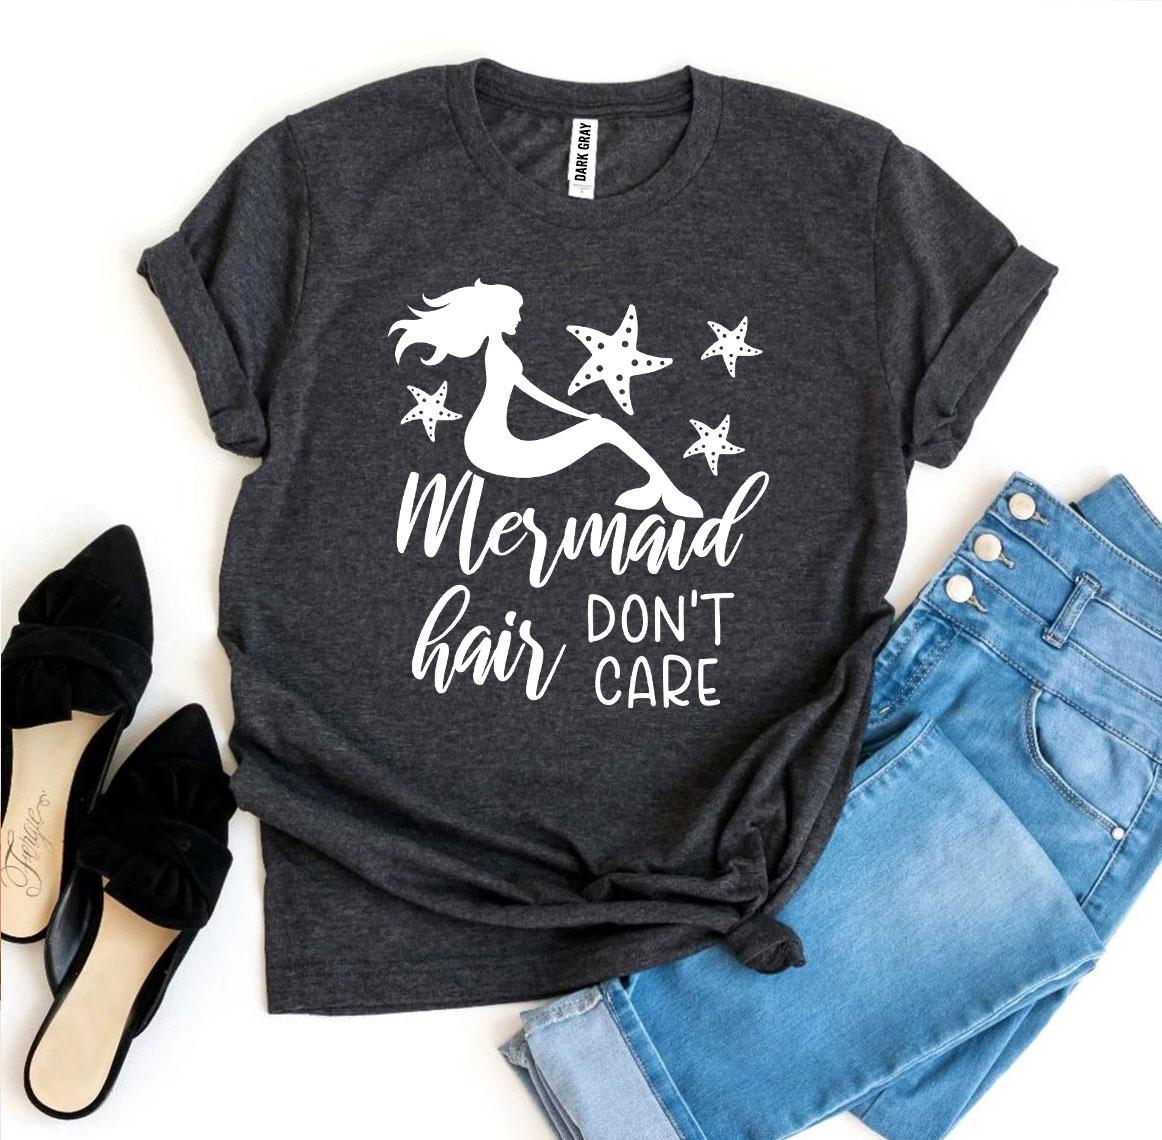 Mermaid Hair Don’t Care T-shirt